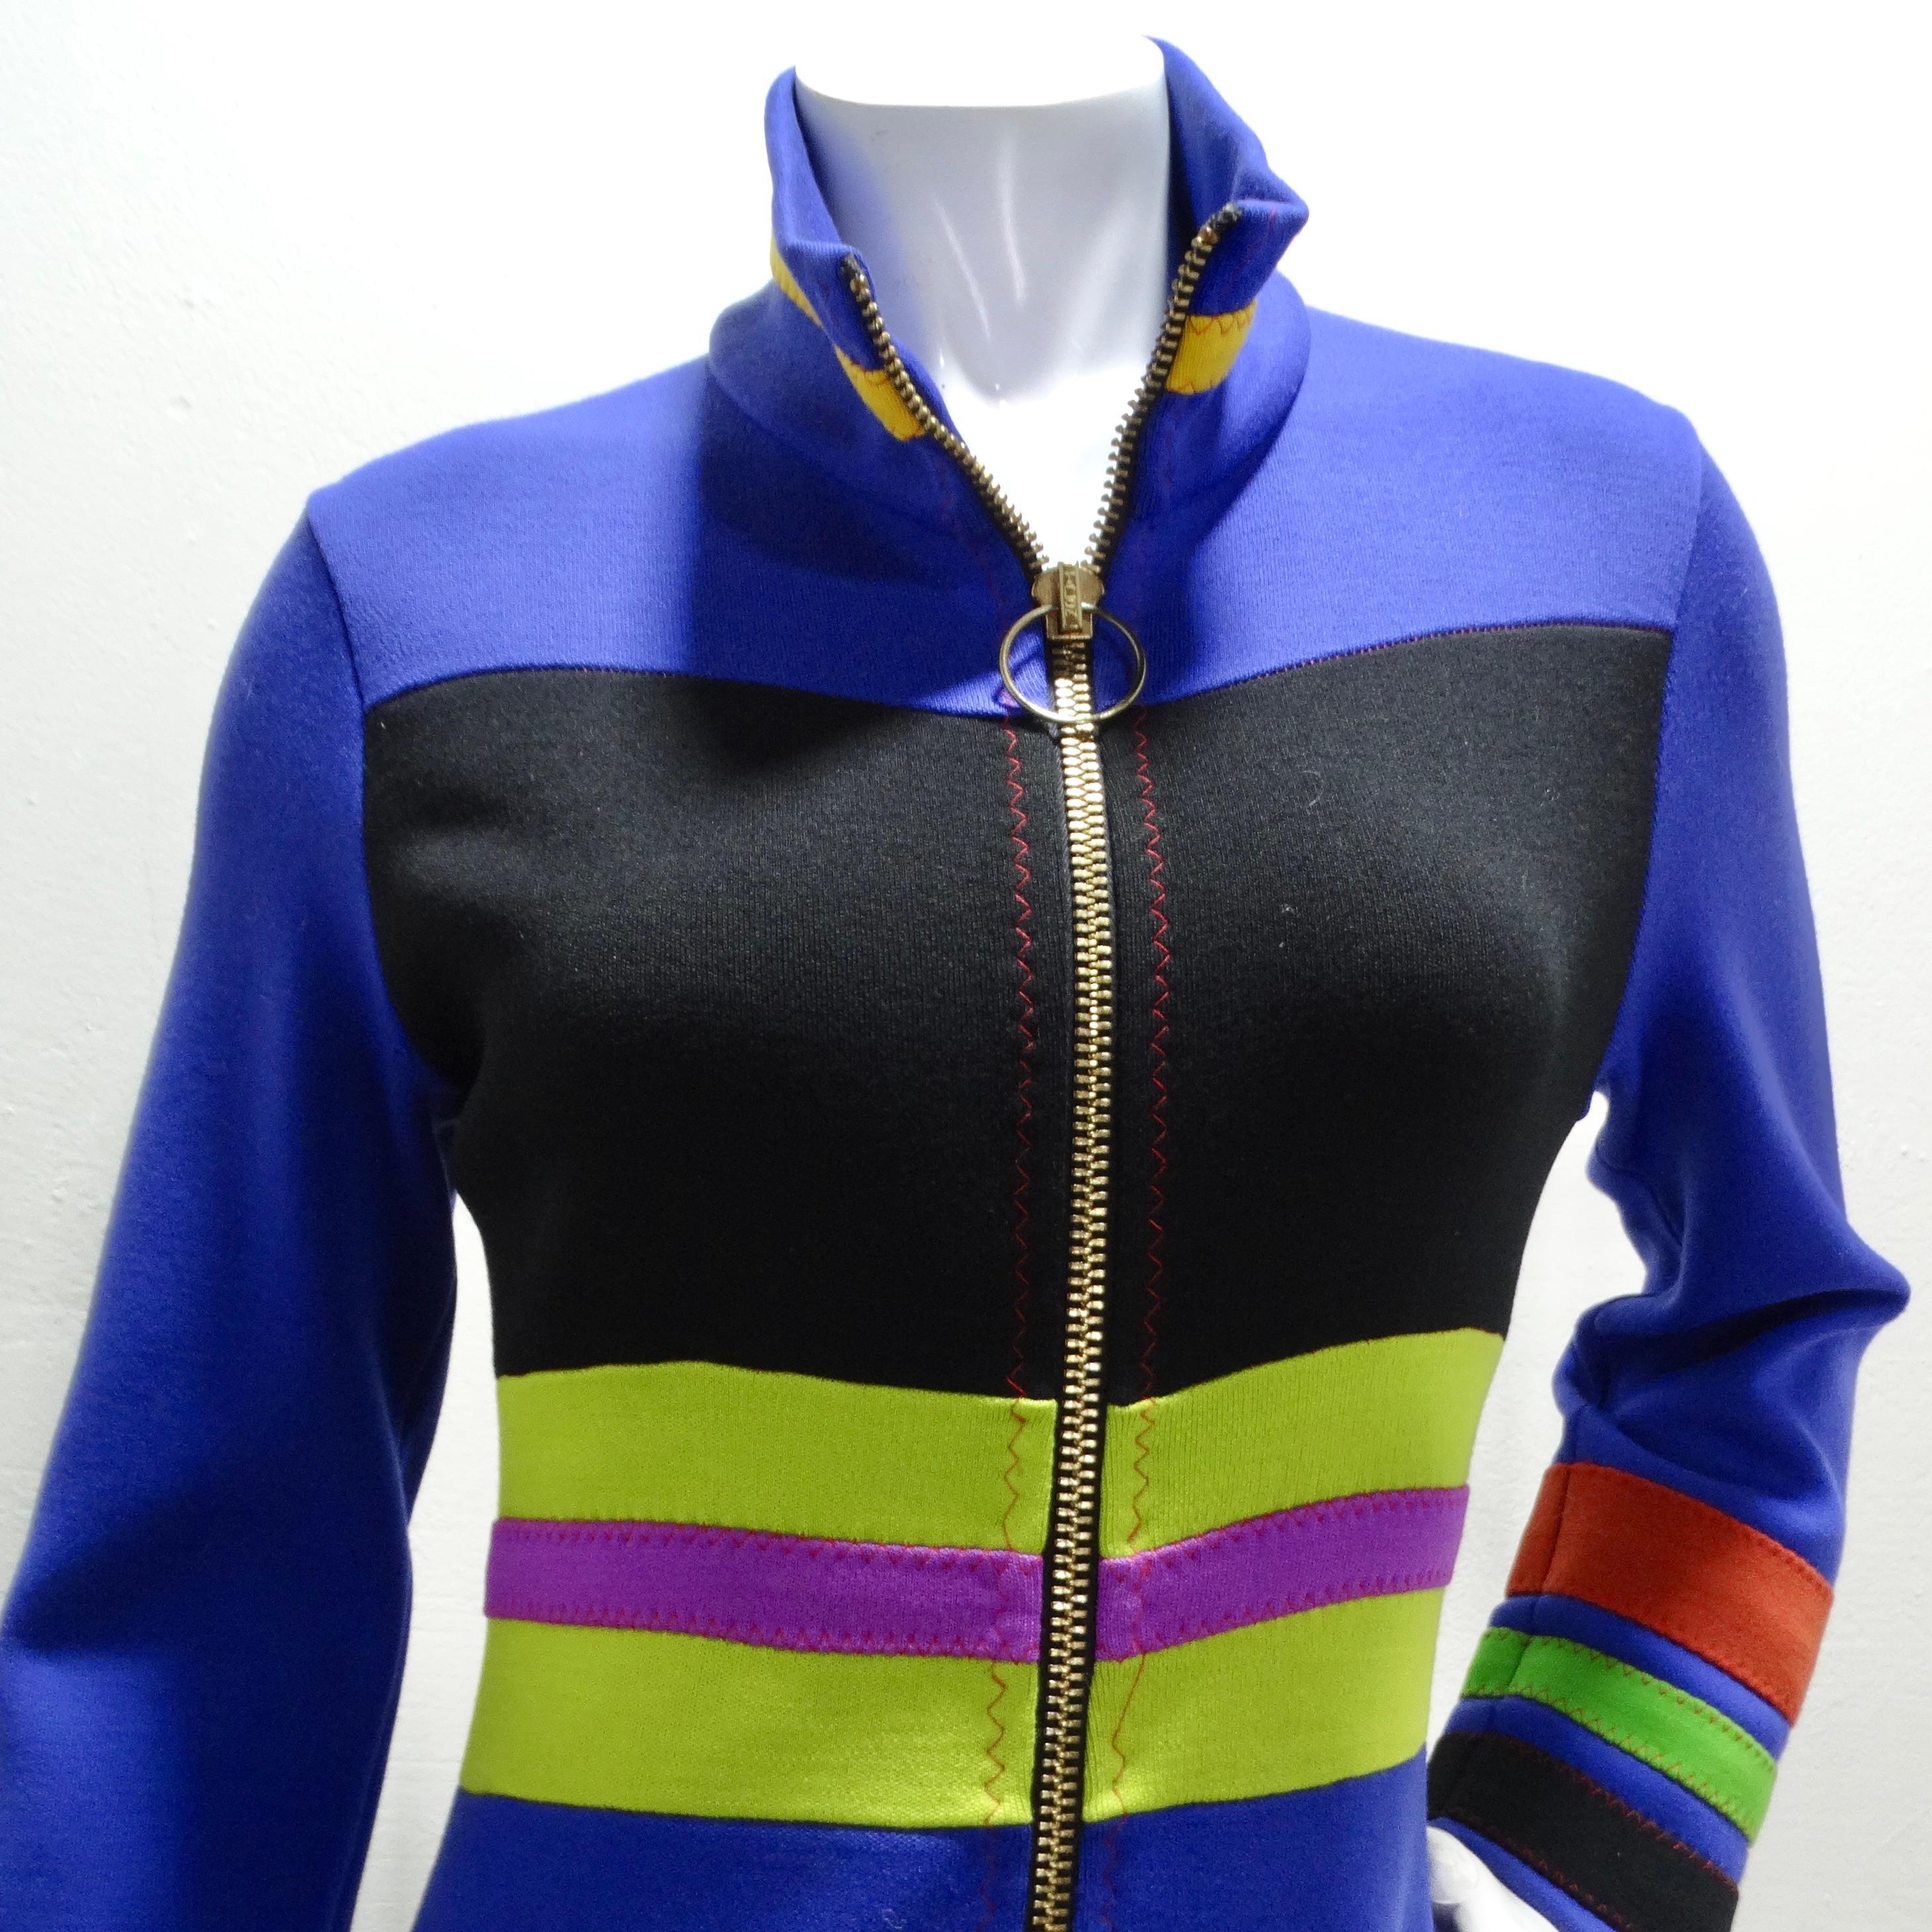 Voici la robe veste Color Block Mod des années 1960 d'I+I, une pièce unique et spéciale qui incarne l'esprit audacieux et ludique de l'époque. Cette veste mi-longue se transforme en une adorable robe lorsqu'elle est zippée, offrant polyvalence et